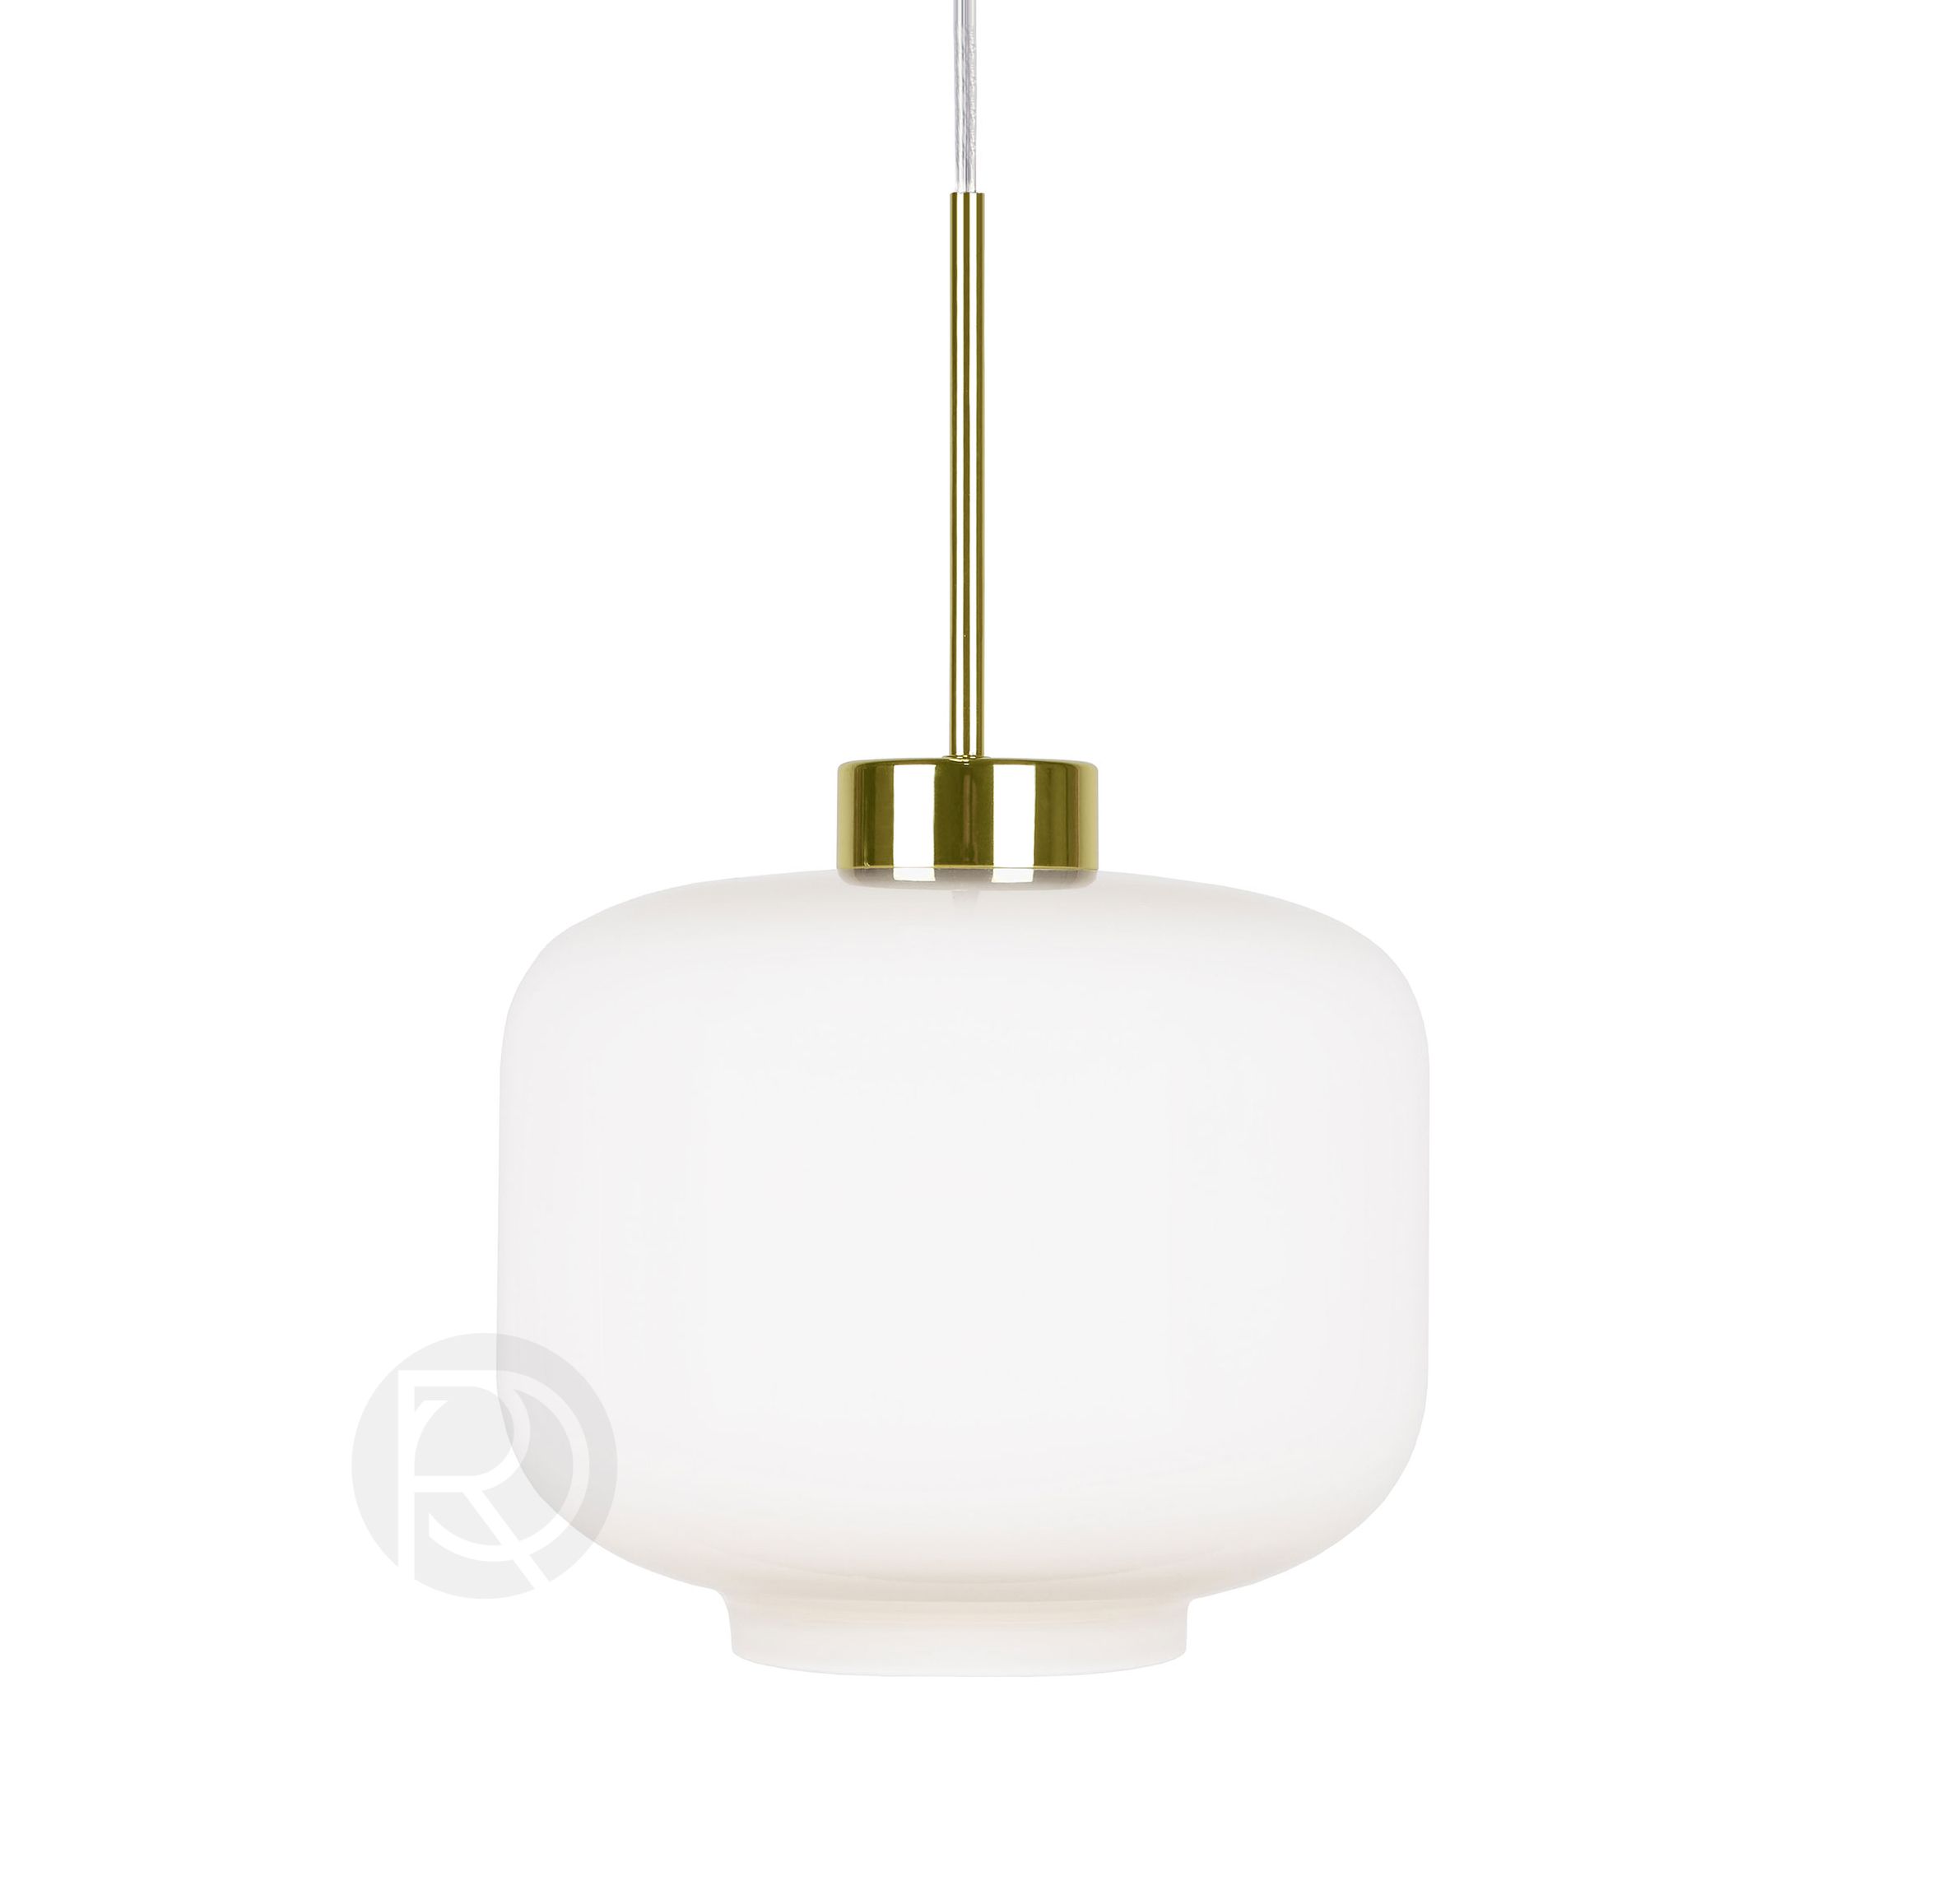 Hanging lamp RITZ by Globen